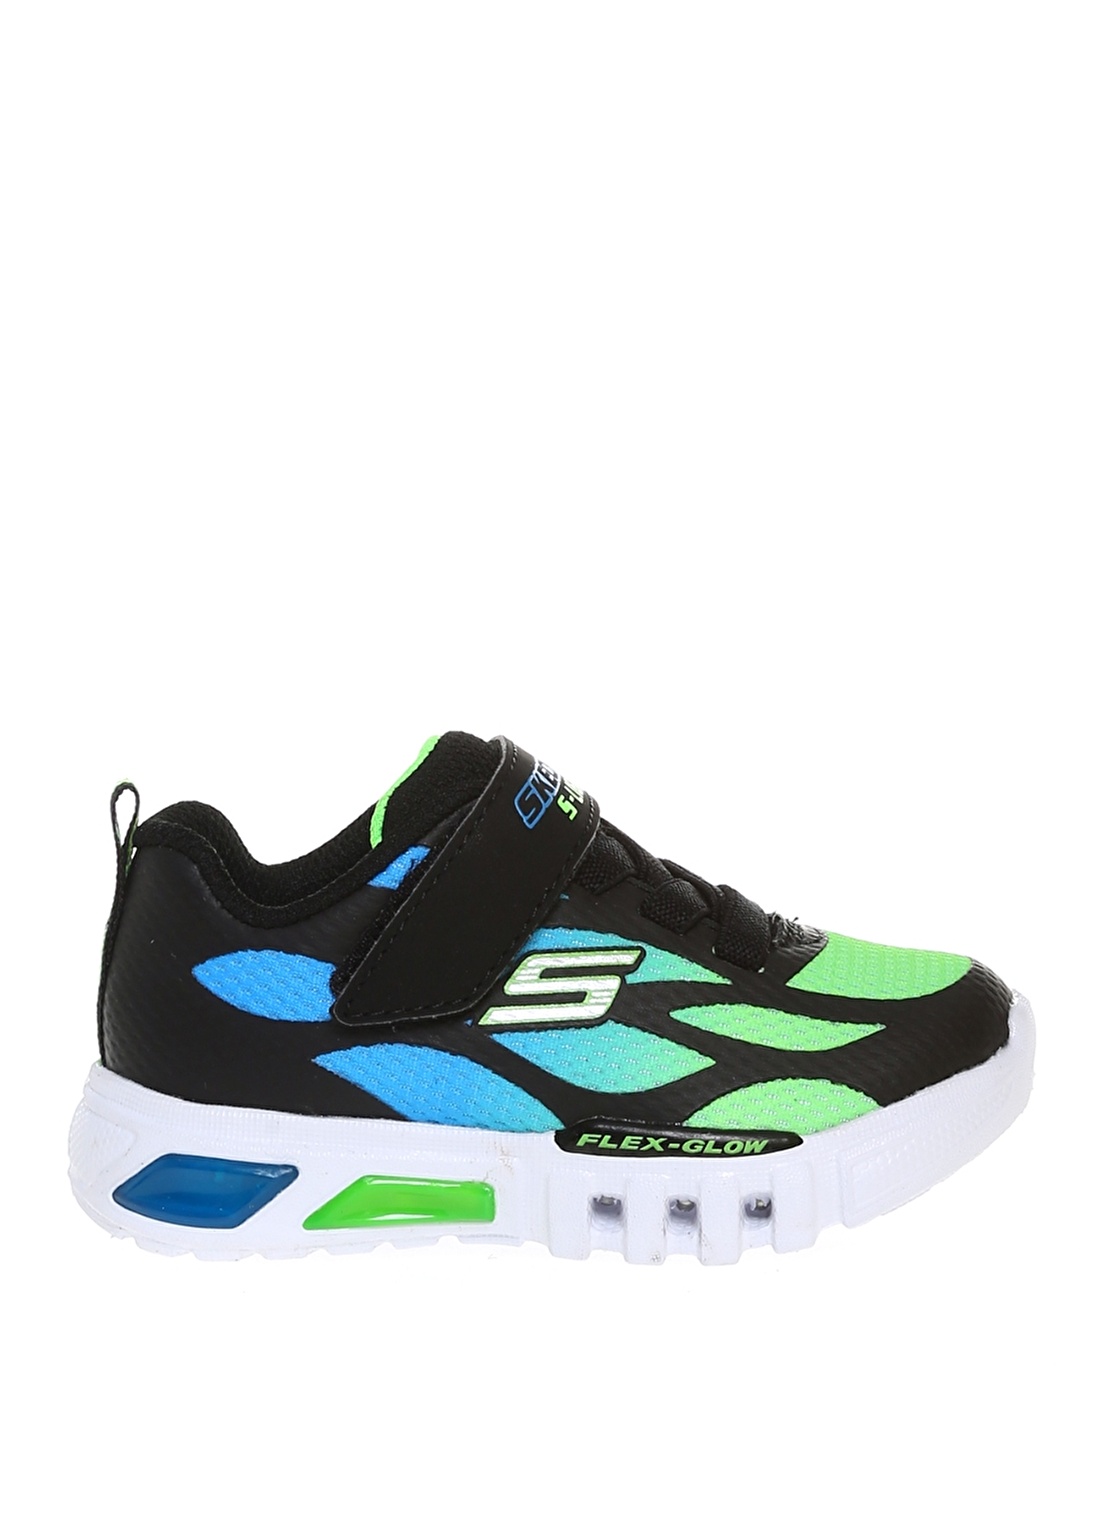 Skechers 400016N Bblm Flex-Glow - Dezlom Siyah - Mavi - Yeşil Erkek Çocuk Yürüyüş Ayakkabısı